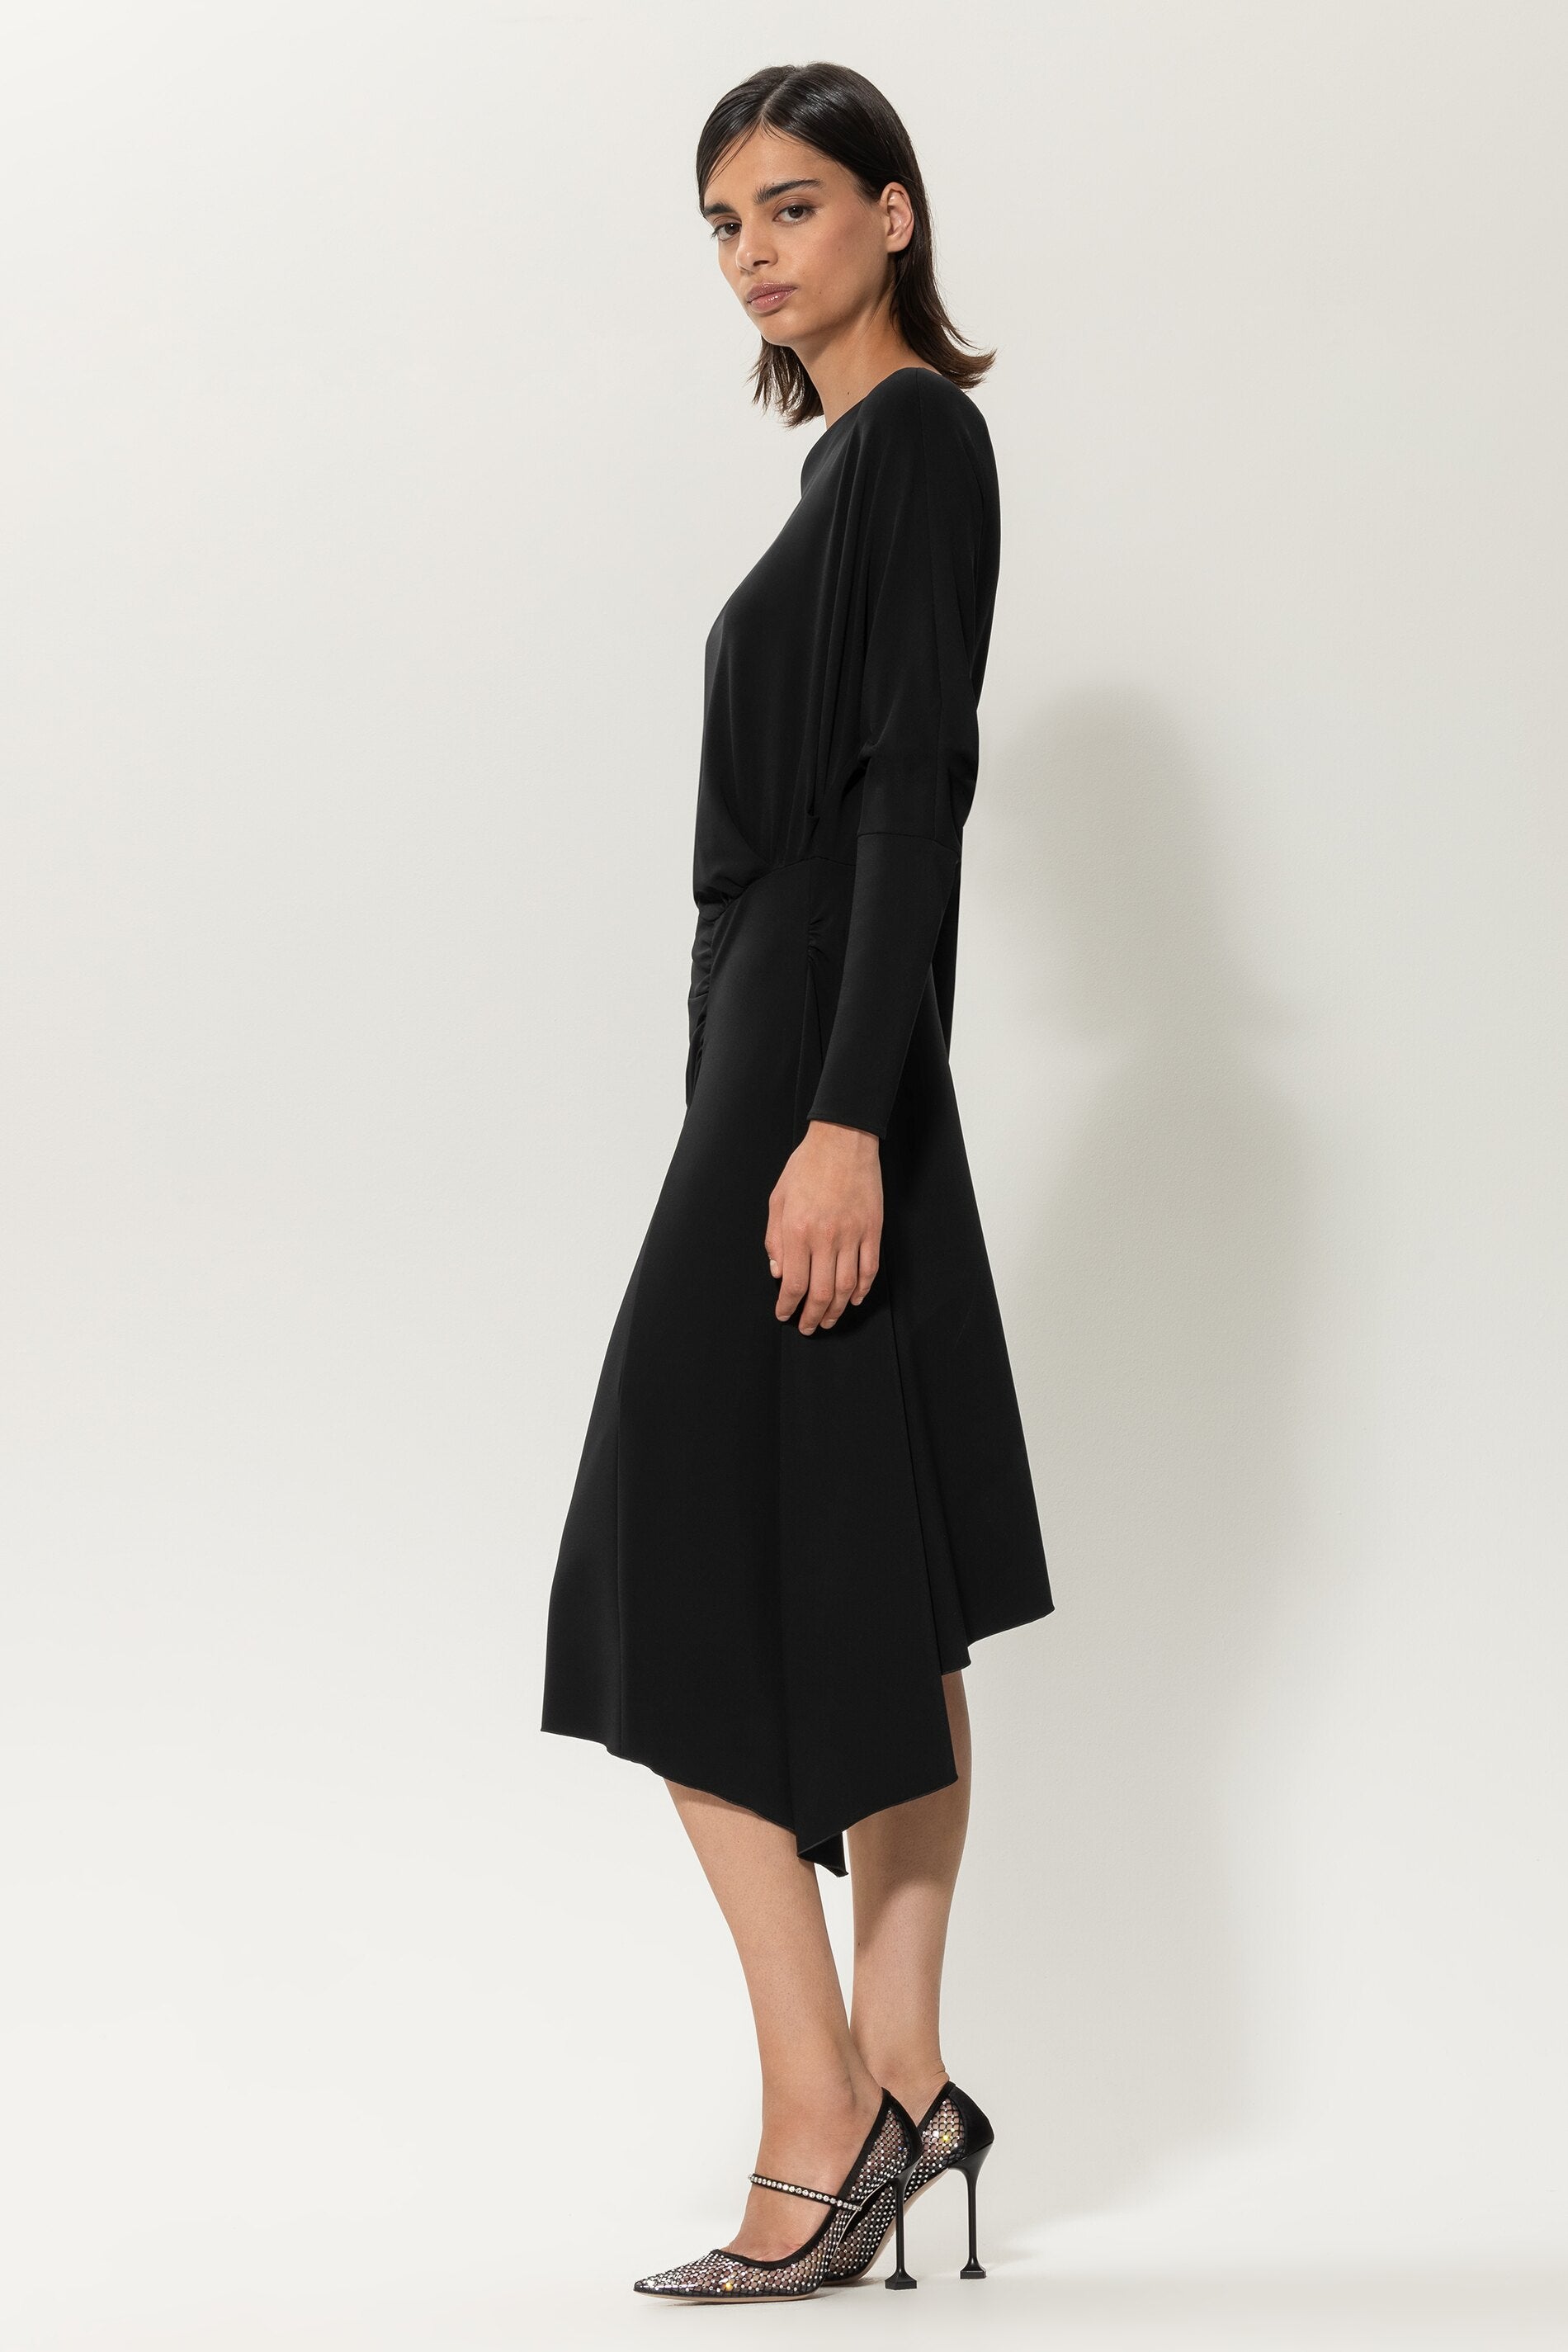 LUISA CERANO-OUTLET-SALE-Asymmetrisches Kleid-Kleider & Röcke-by-ARCHIVIST